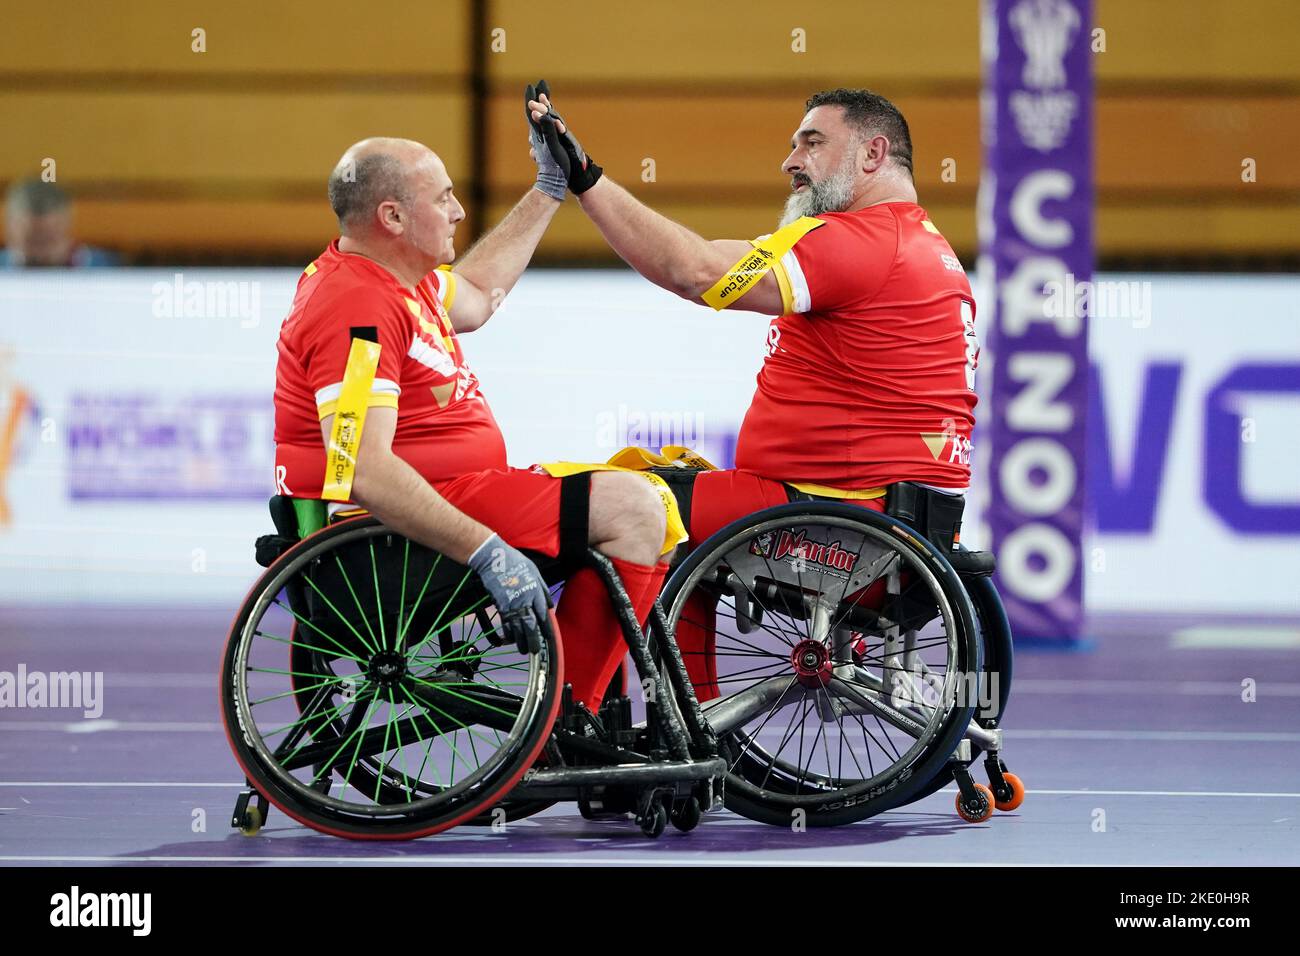 Spanien feiert nach der Weltmeisterschaft der RollstuhlRugby League ein Spiel in der Copper Box Arena in London. Bilddatum: Mittwoch, 9. November 2022. Stockfoto